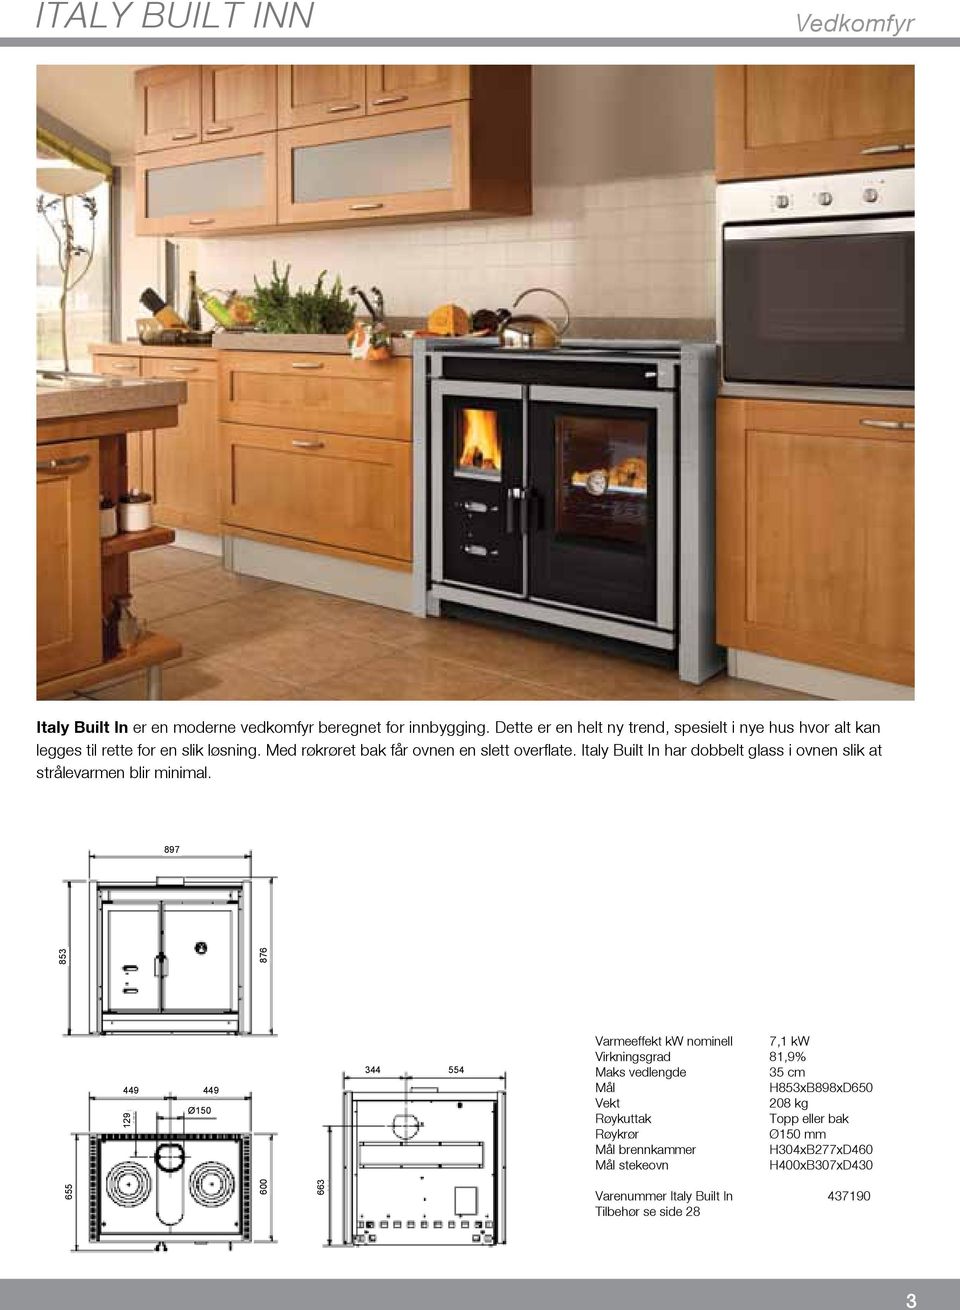 Italy Built In har dobbelt glass i ovnen slik at strålevarmen blir minimal.